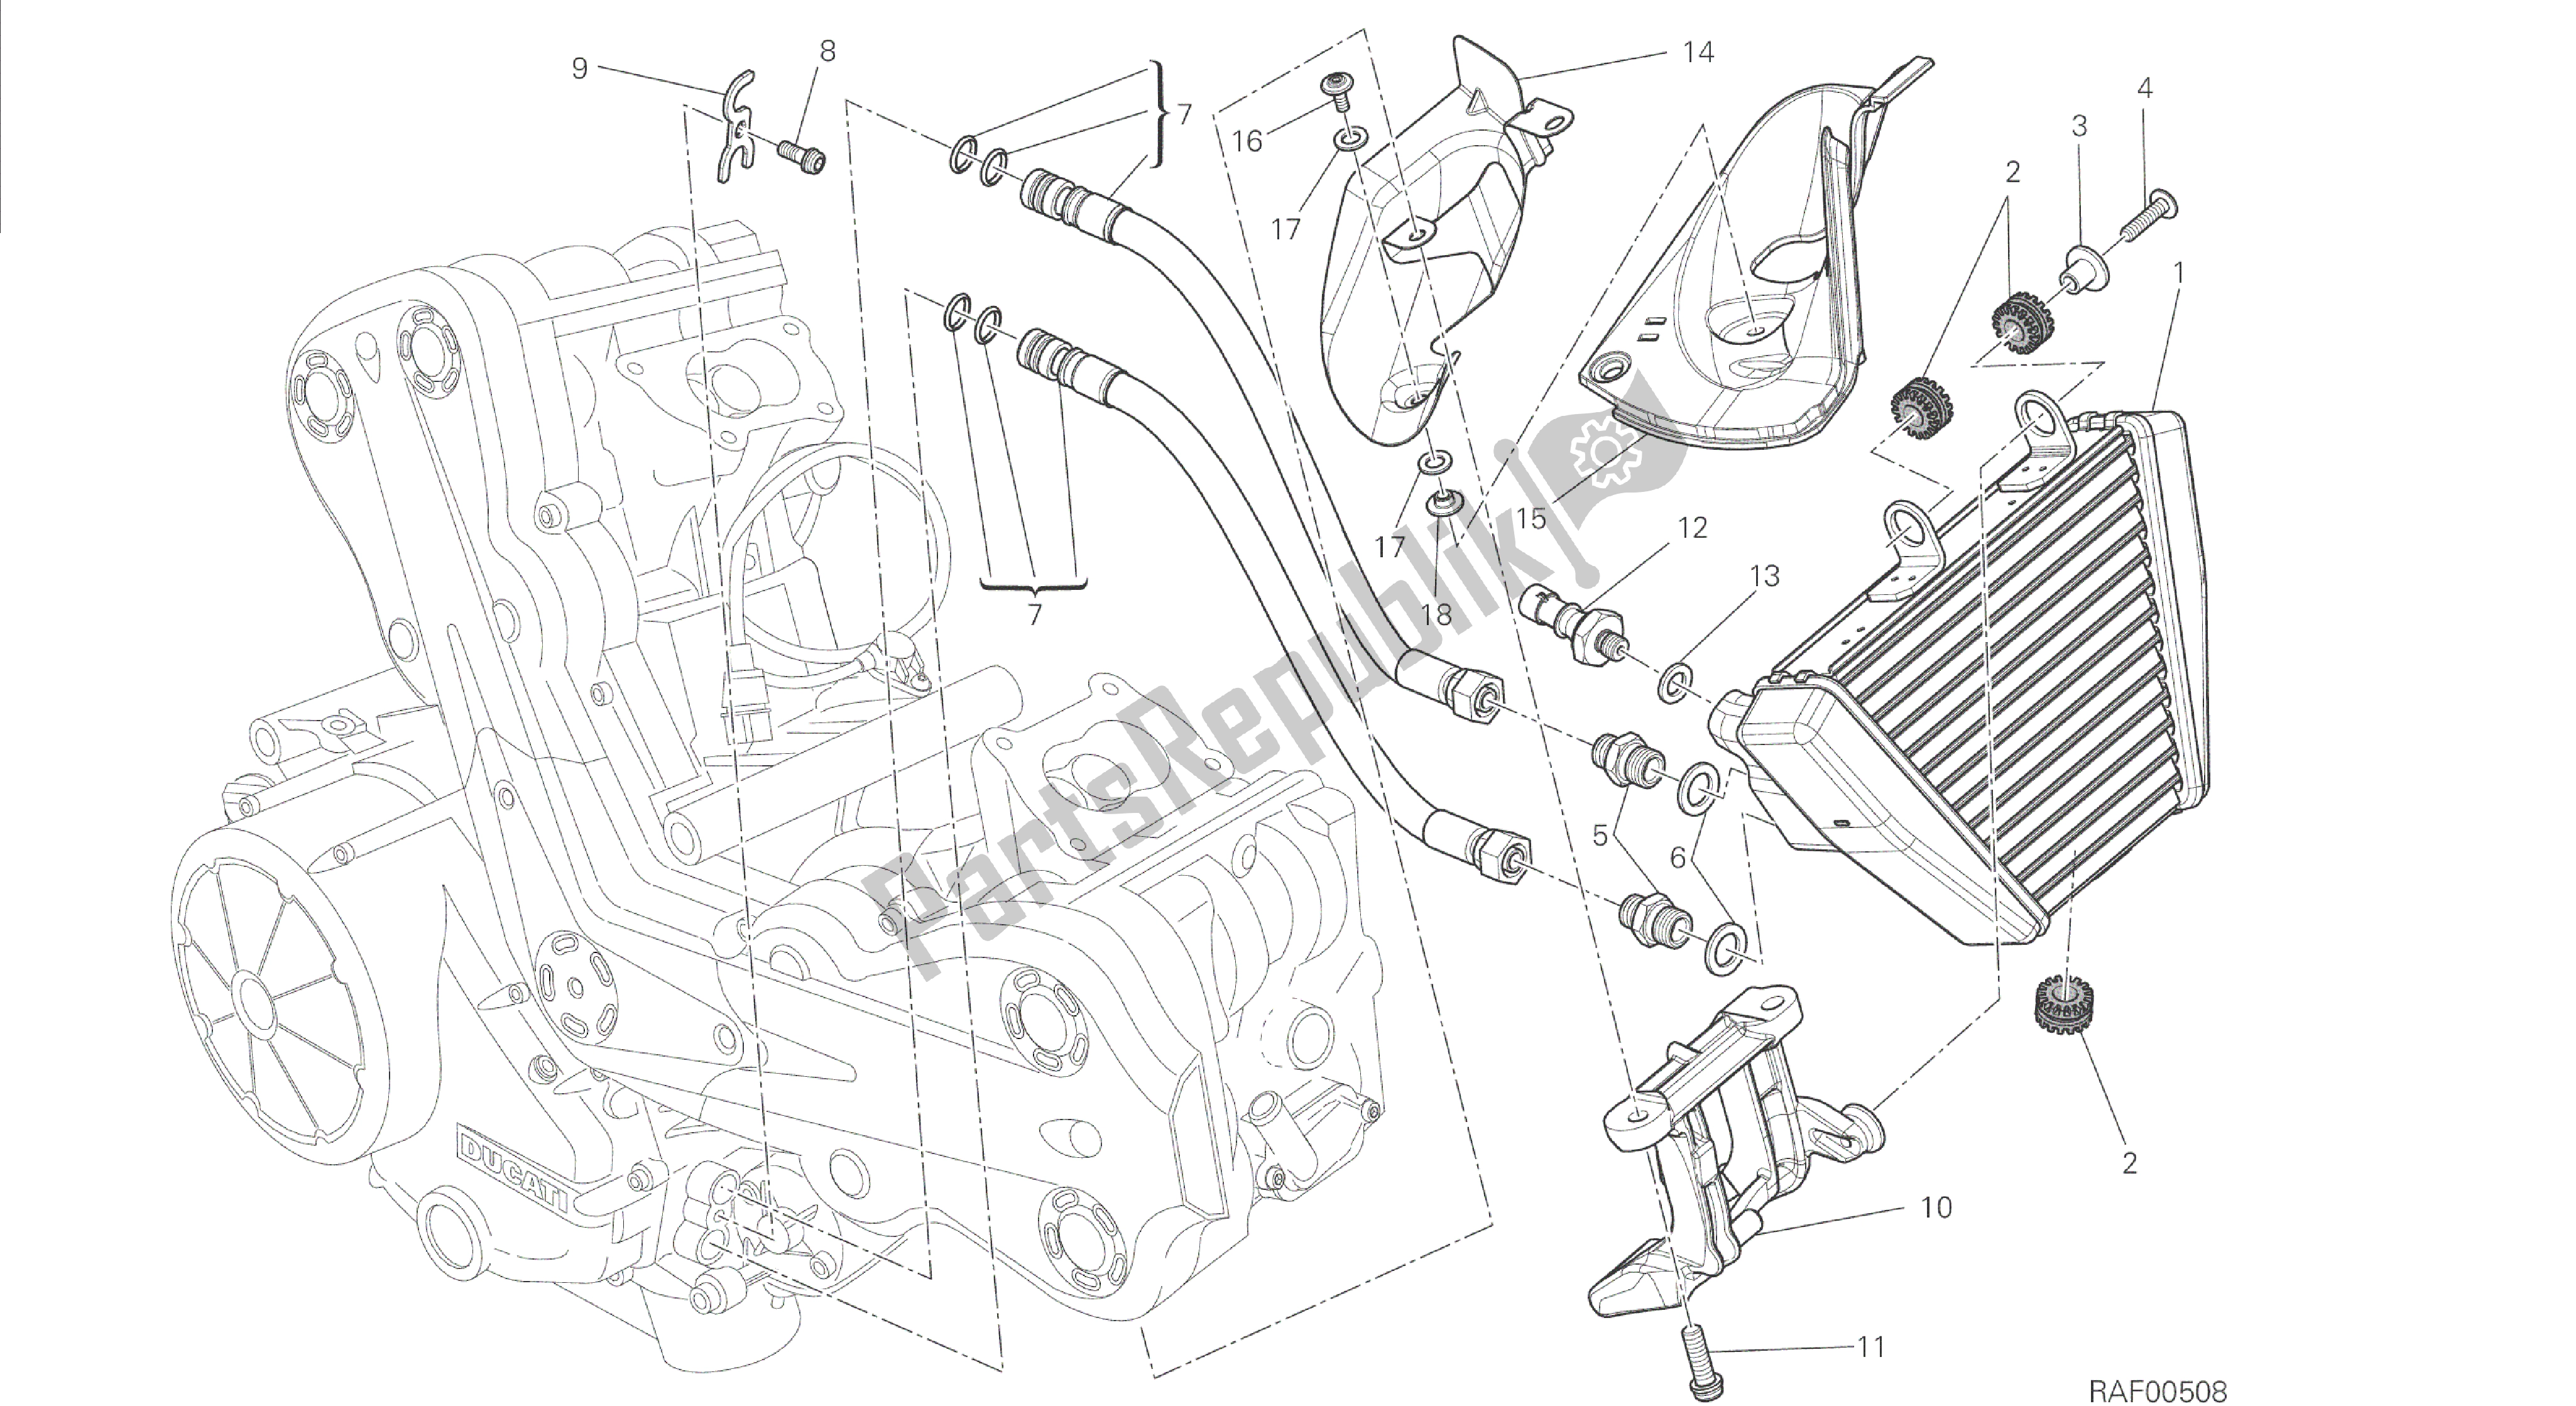 Todas las partes para Dibujo 016 - Motor Del Grupo Enfriador De Aceite [mod: Dvl] de Ducati Diavel 1200 2014